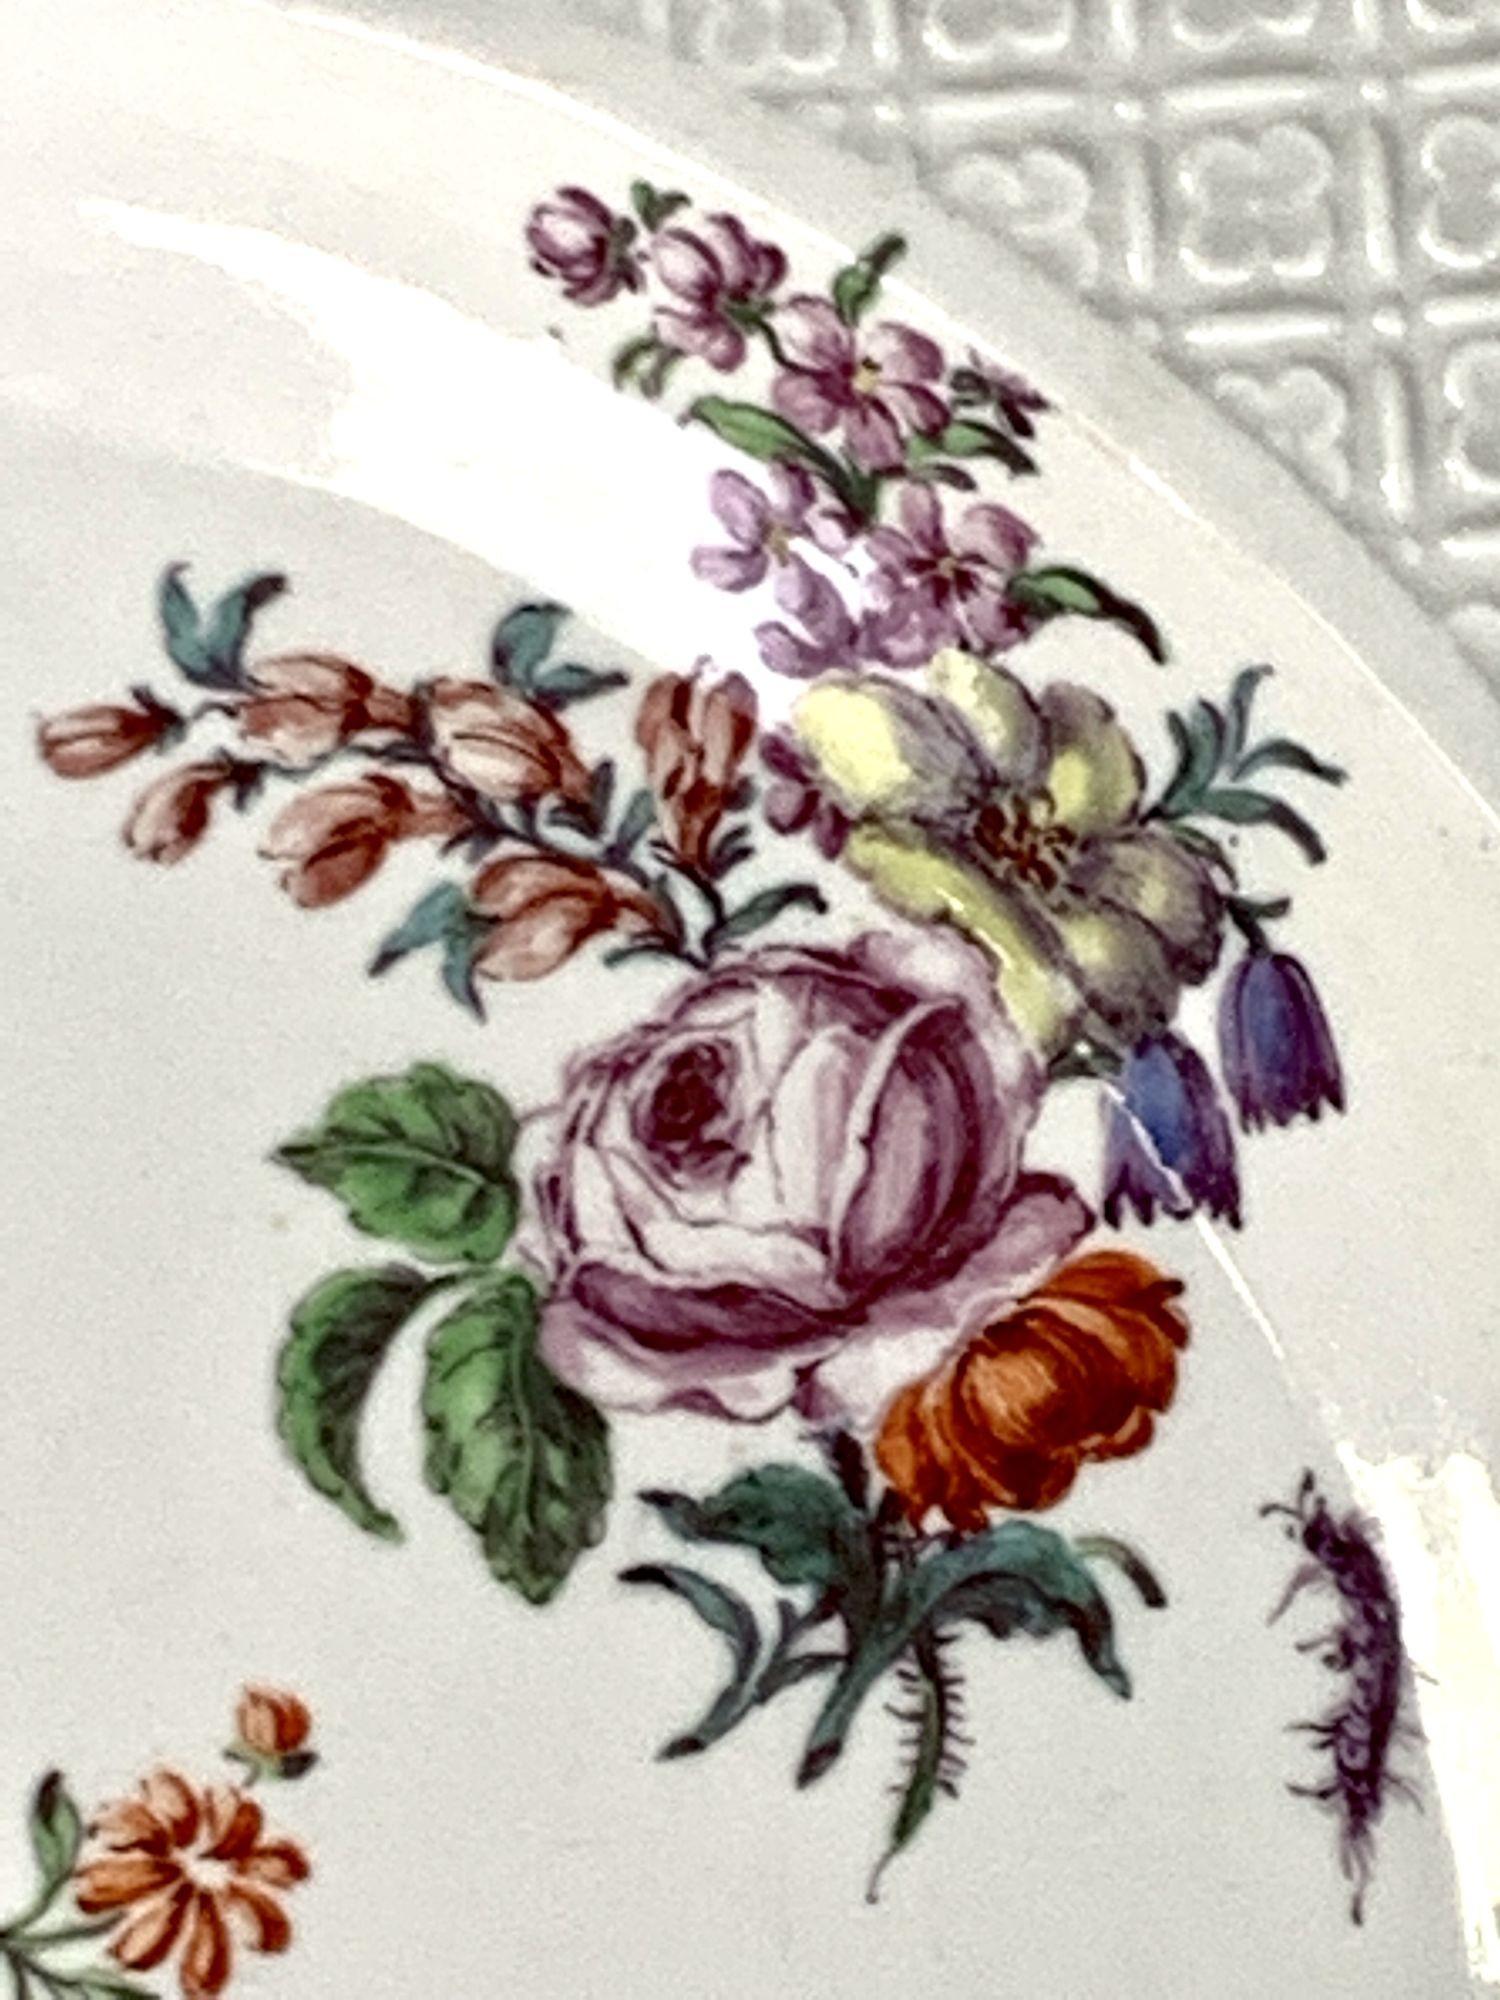 Les pièces de la période de l'ancre rouge de Chelsea (1752-1758), au cours de laquelle ce plat a été fabriqué, sont généralement considérées comme les plus belles œuvres produites par la manufacture*.
Le charme de ce plat en porcelaine tendre de